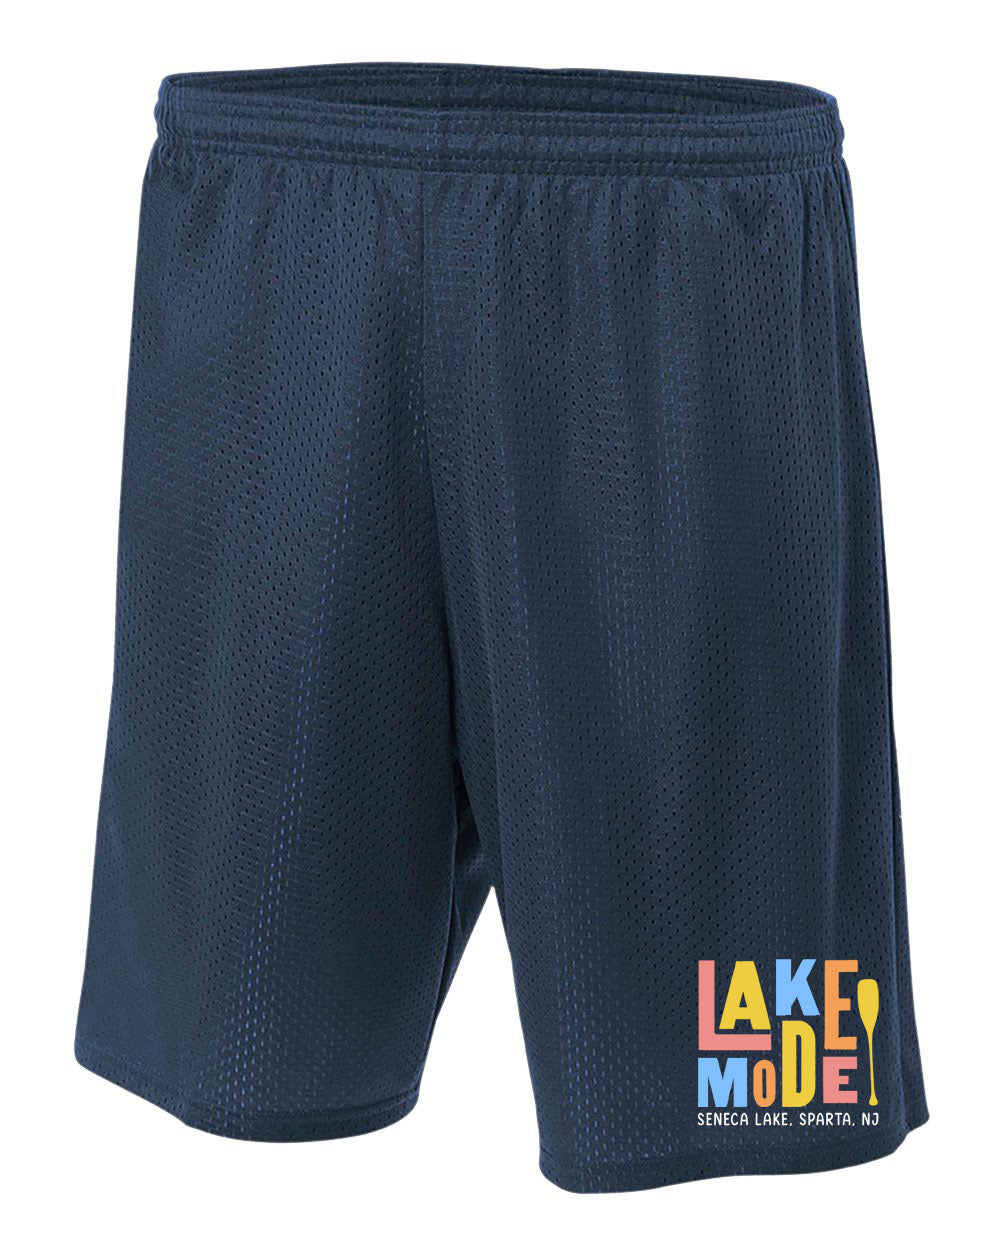 Seneca Lake Design 3 Shorts